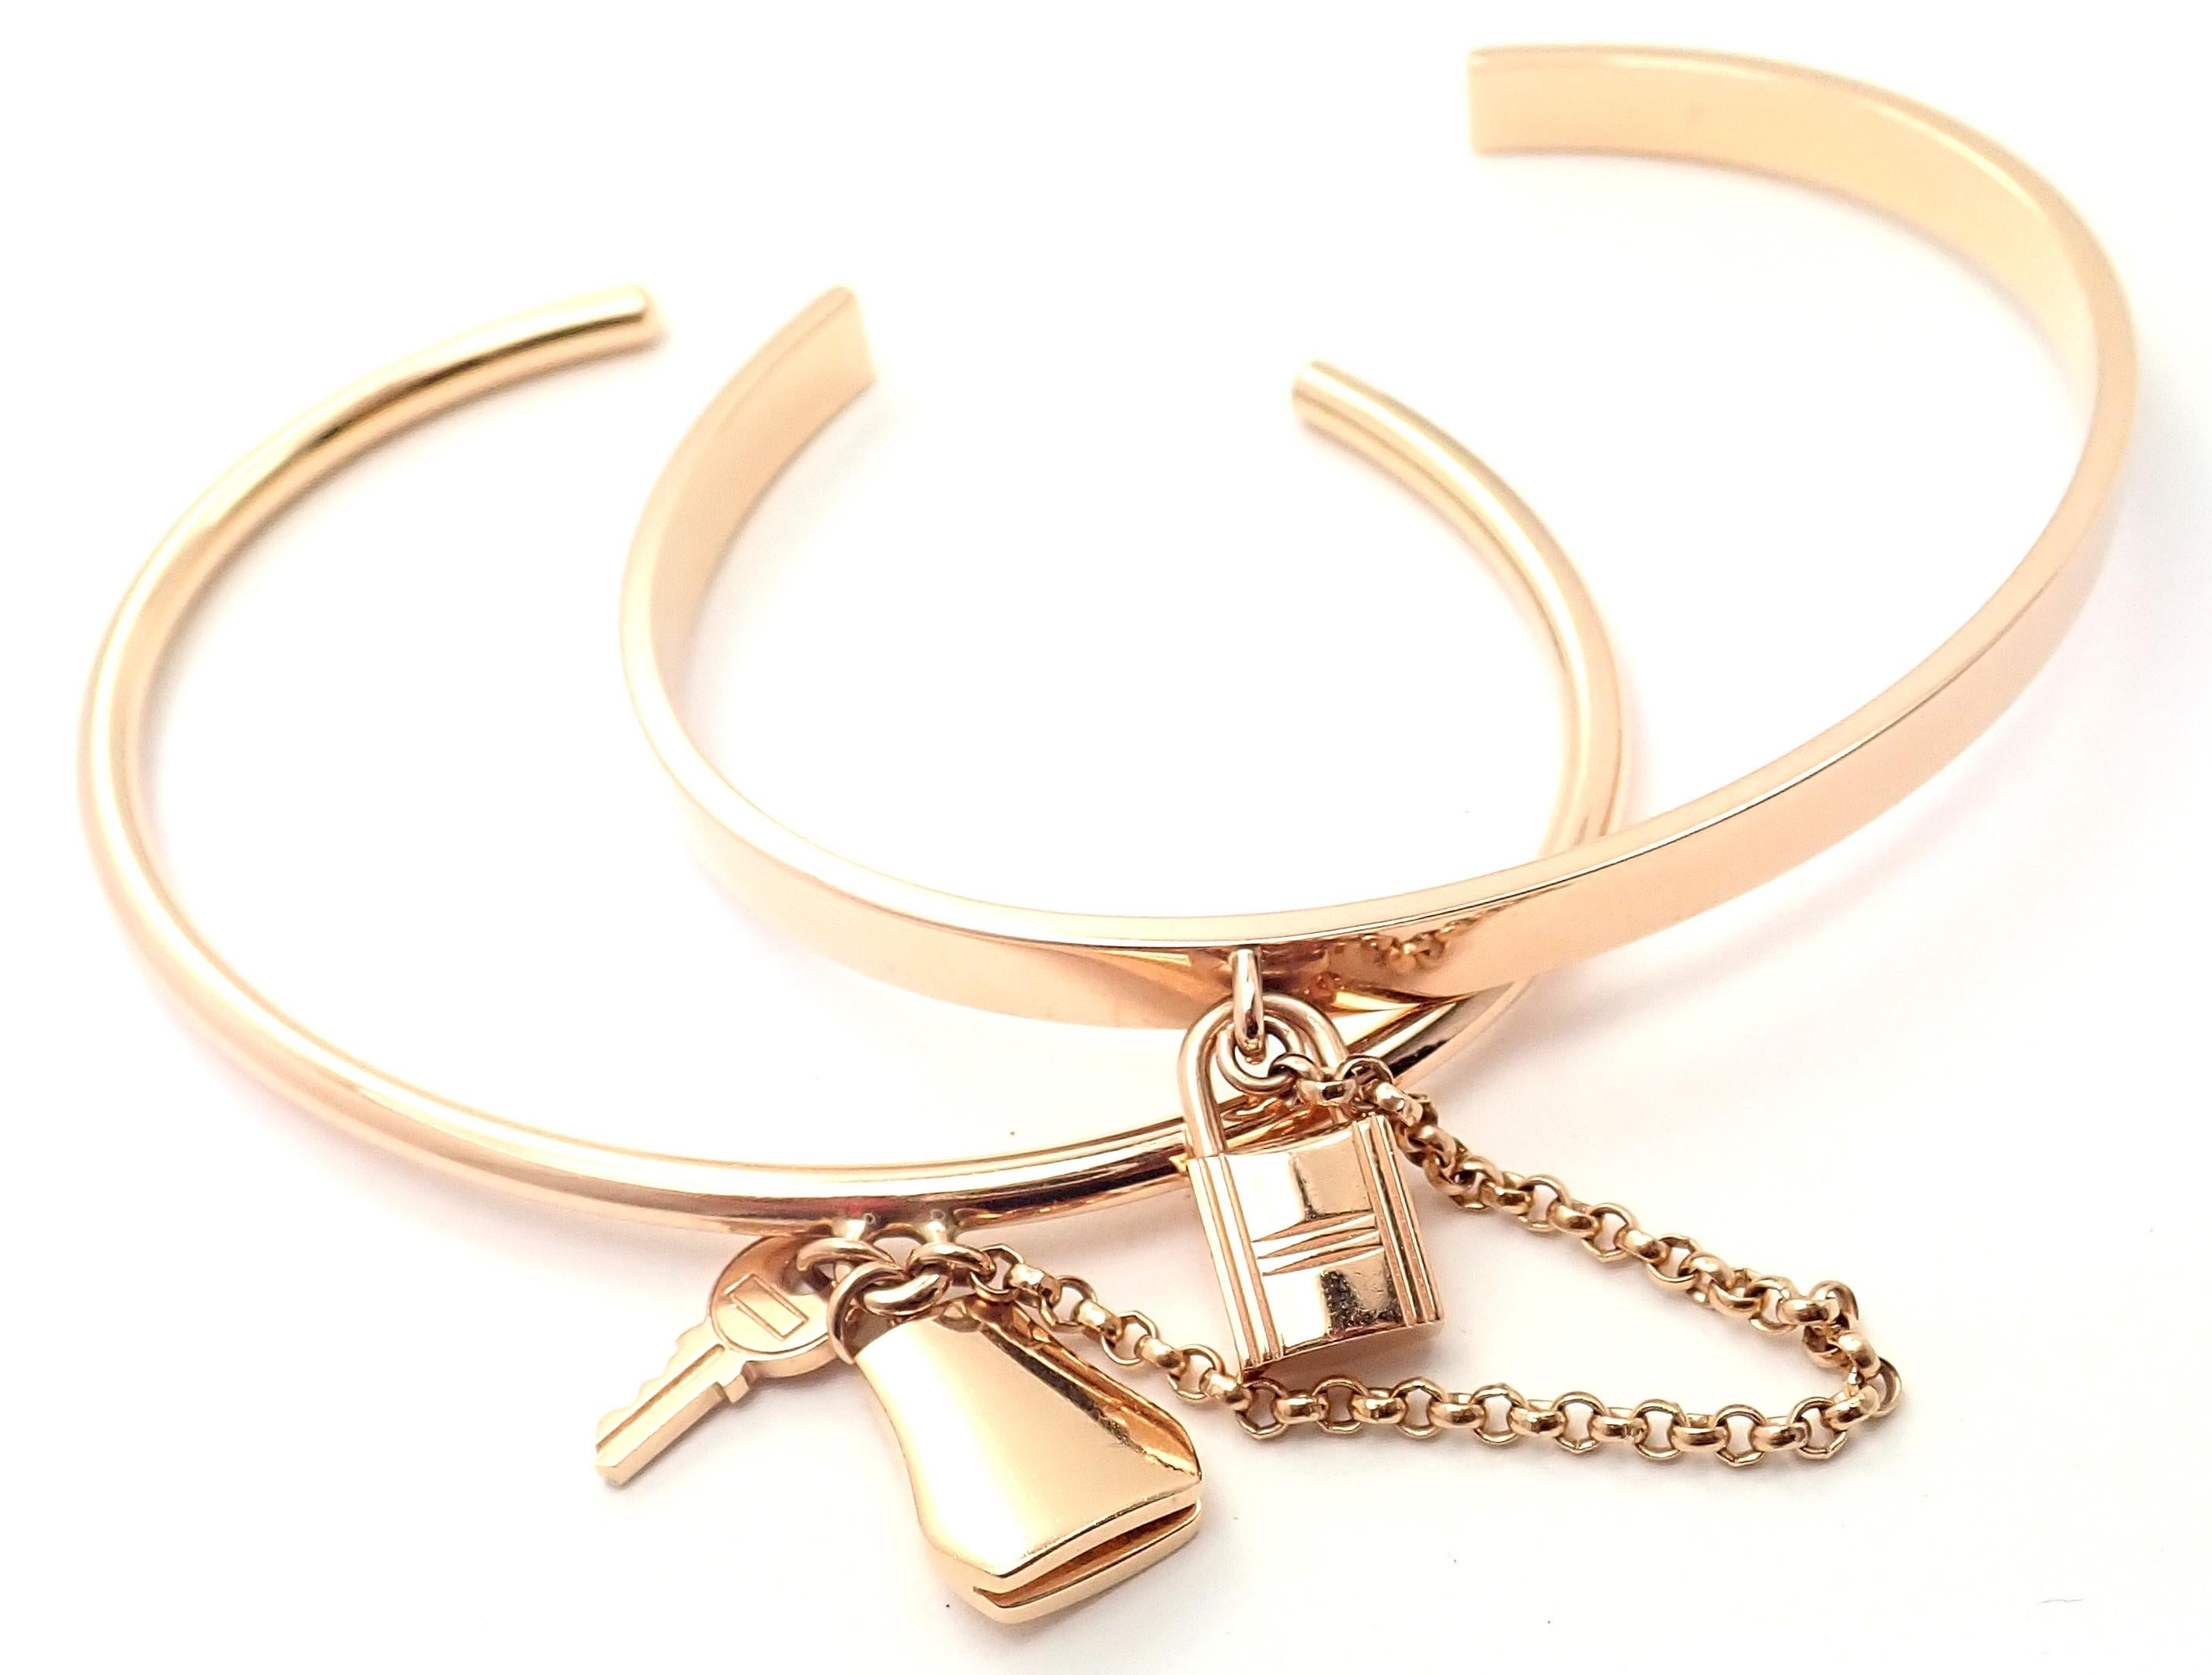 bracelet Kelly Clochette double en or jaune 18 carats par Hermès.
Détails :
Poids : 30,3 grammes
Longueur : 6